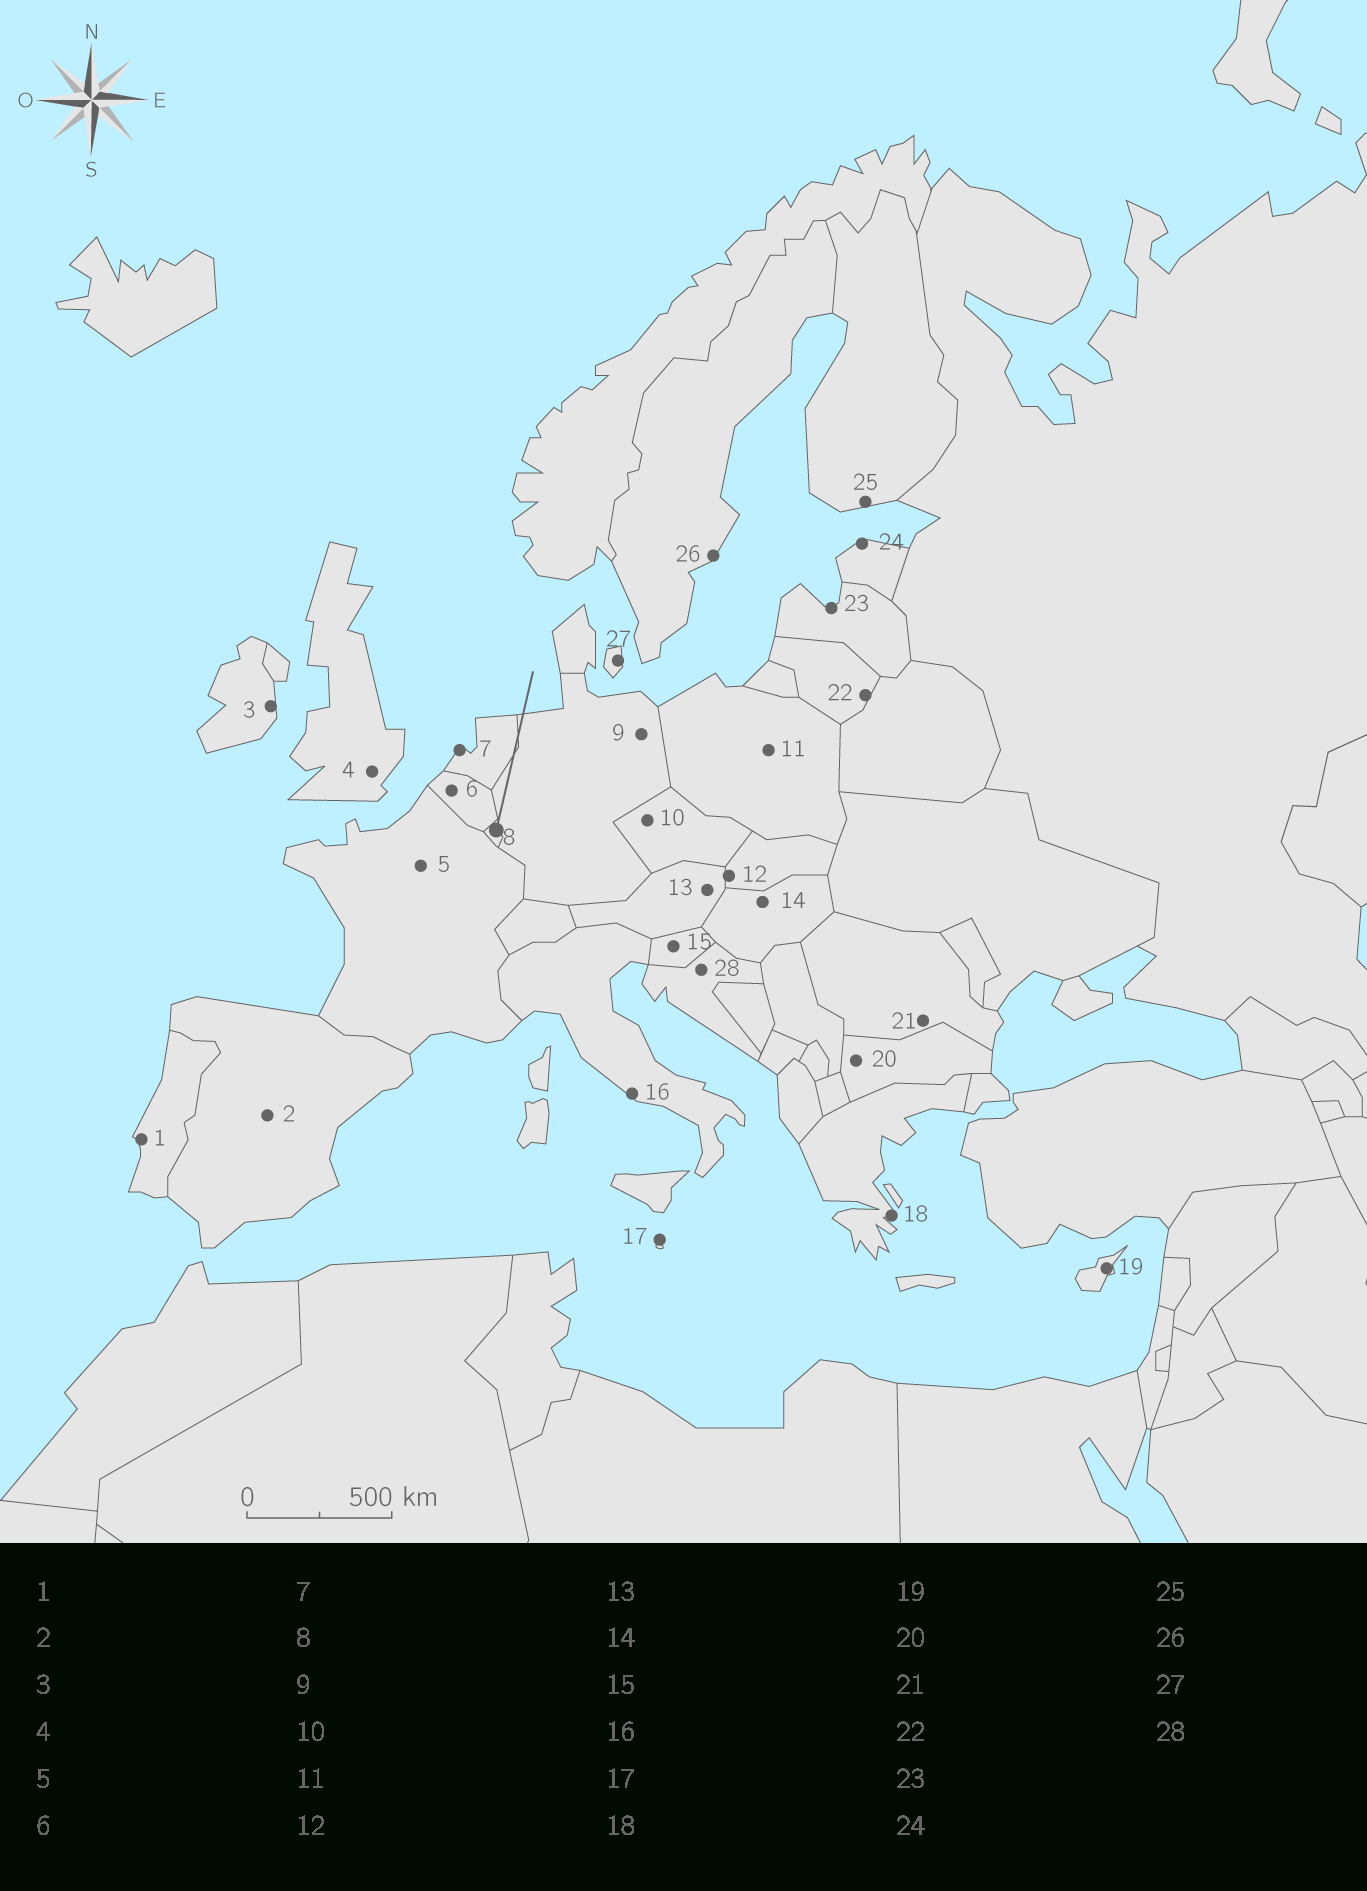 Compléter La Carte Des Etats Membres De L'union Européenne concernant La Carte De L Union Européenne